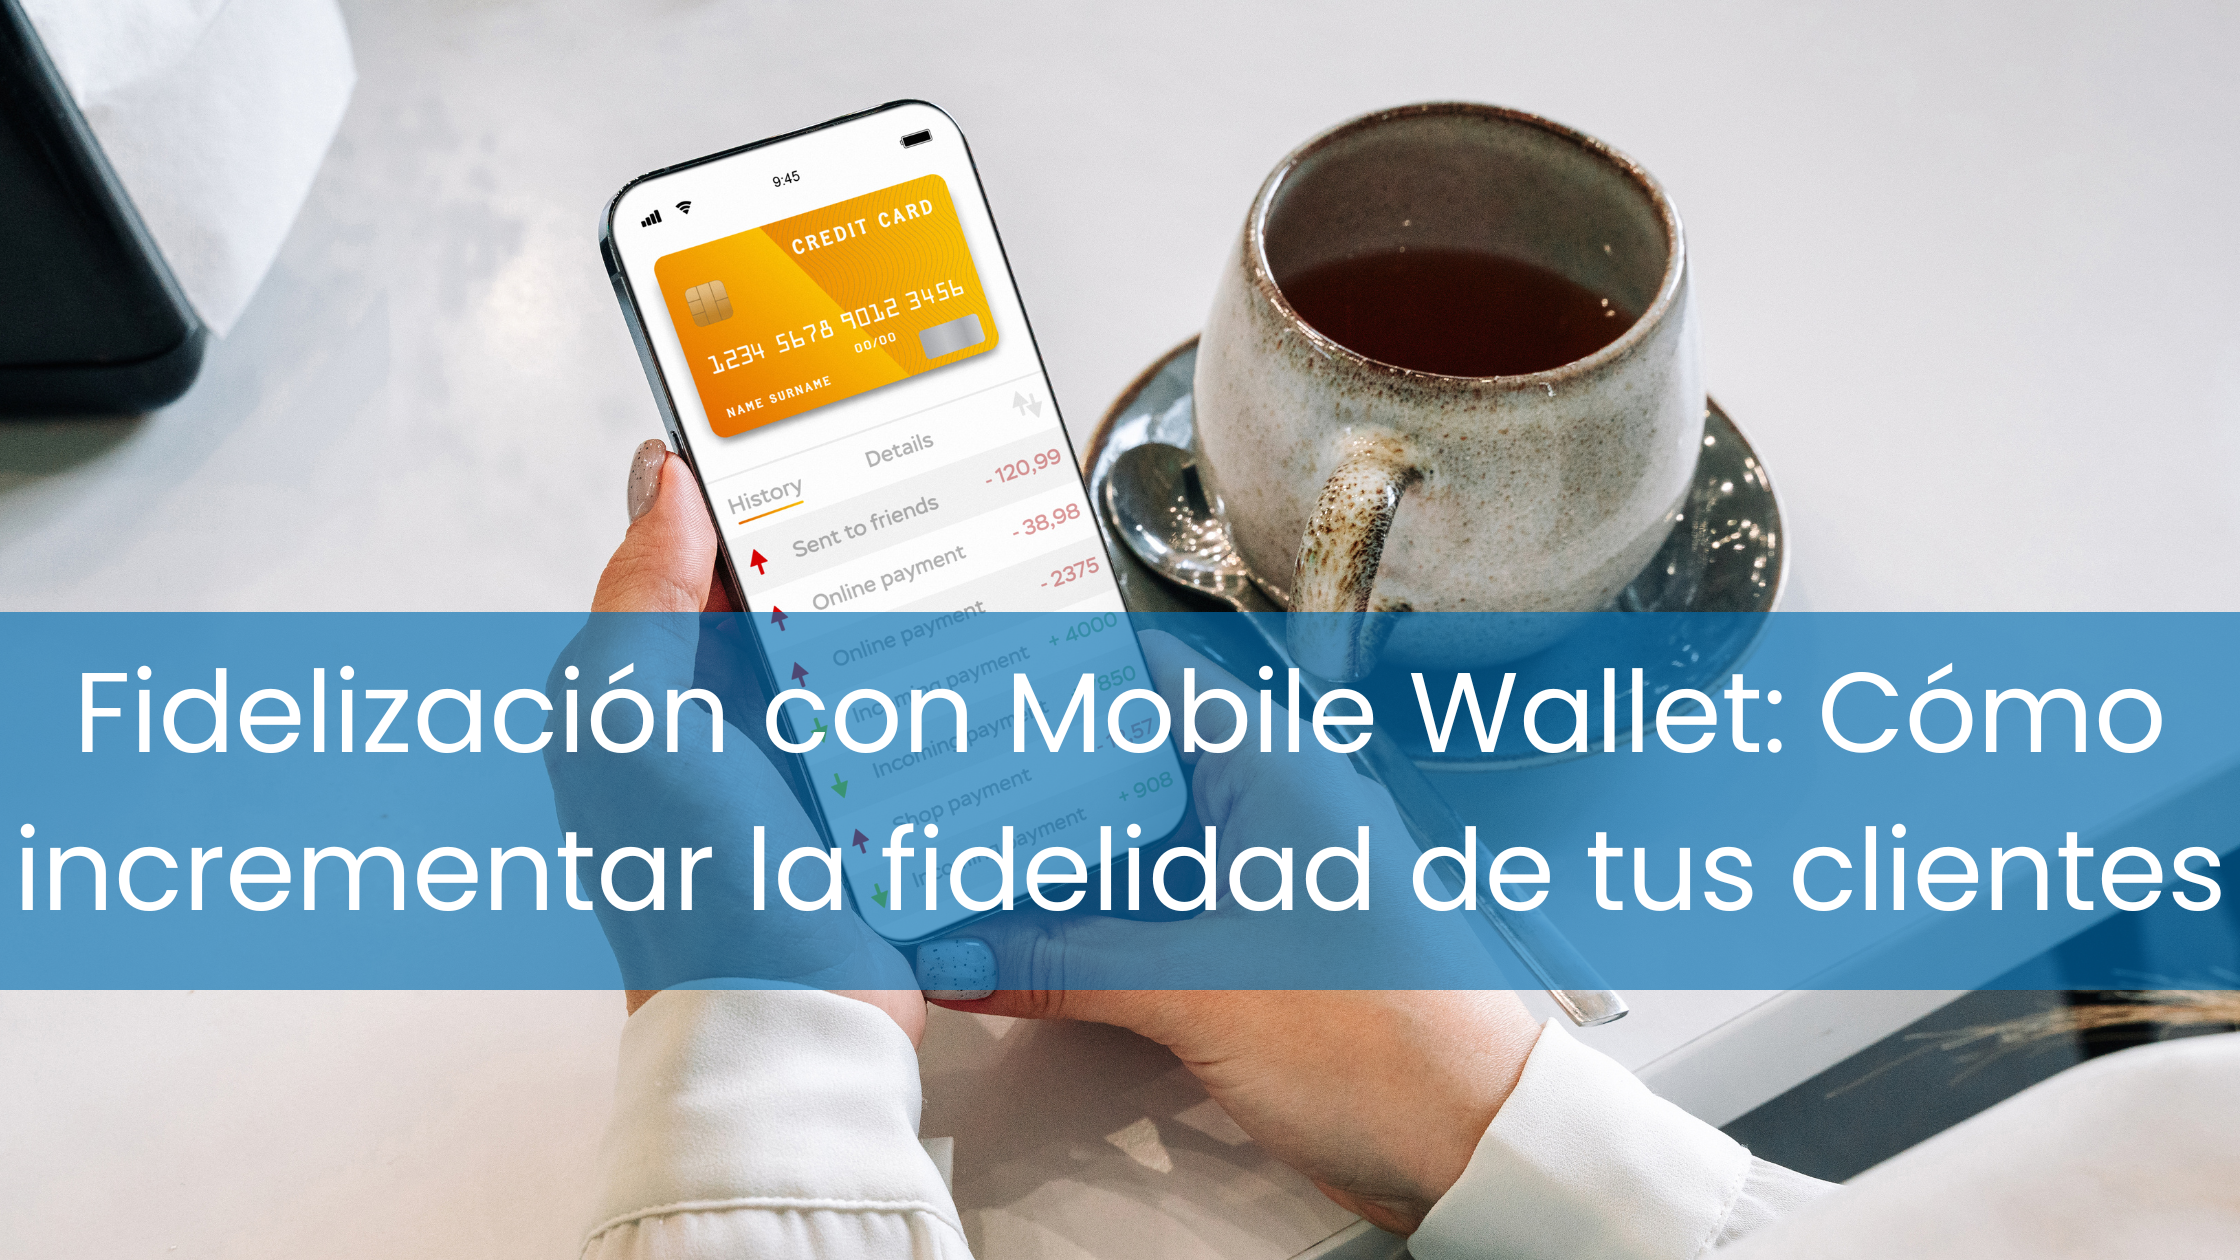 Fidelización con Mobile Wallet: Cómo incrementar la fidelidad de tus clientes